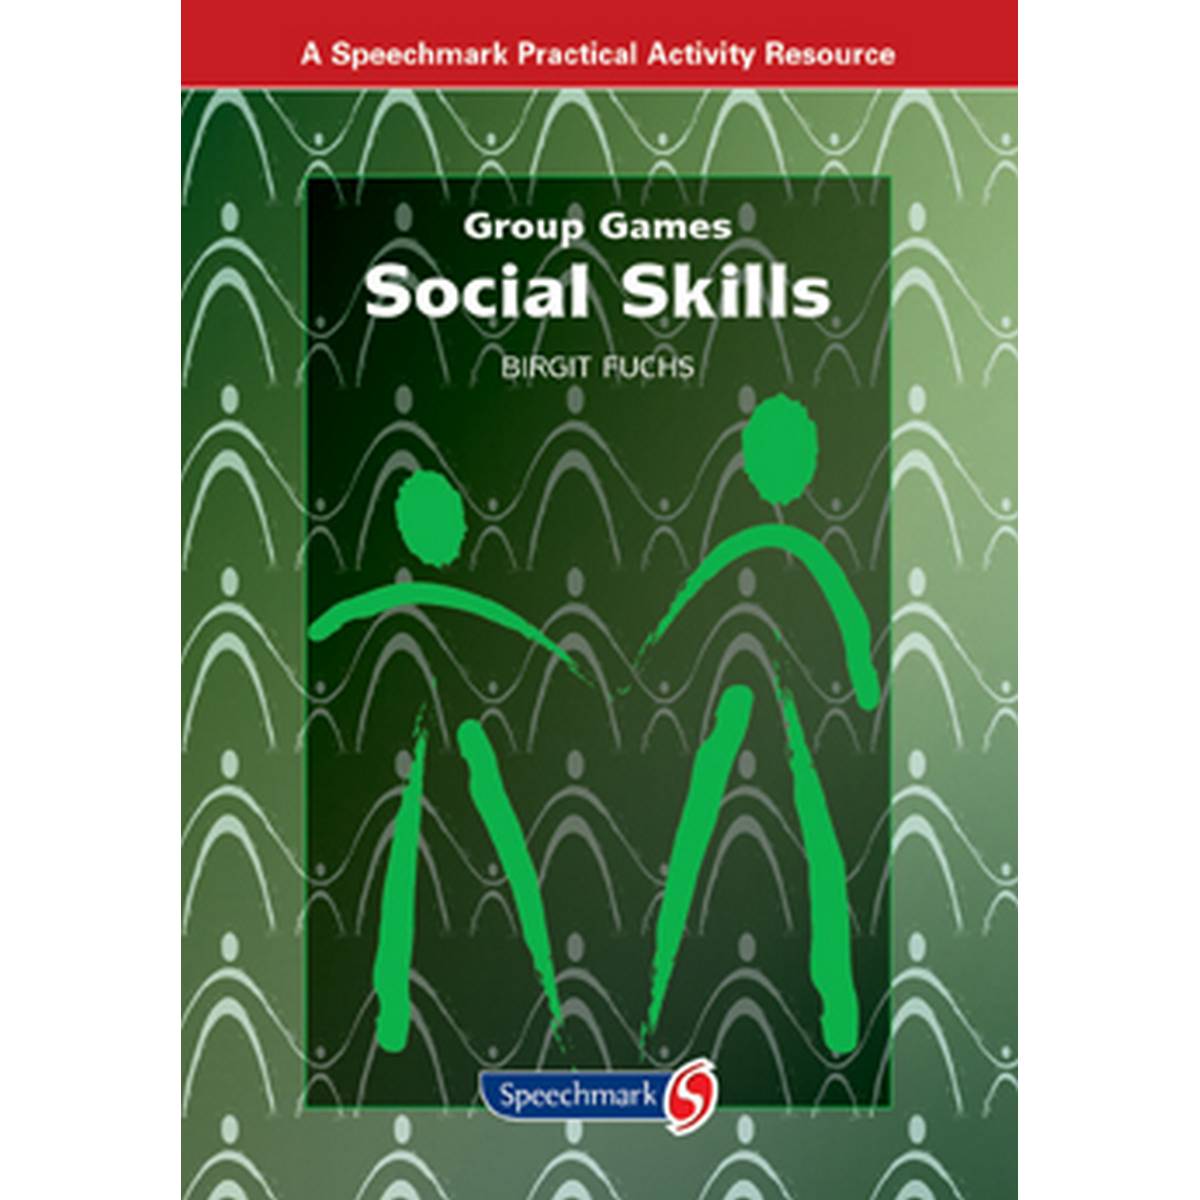 Group Games: Social Skills